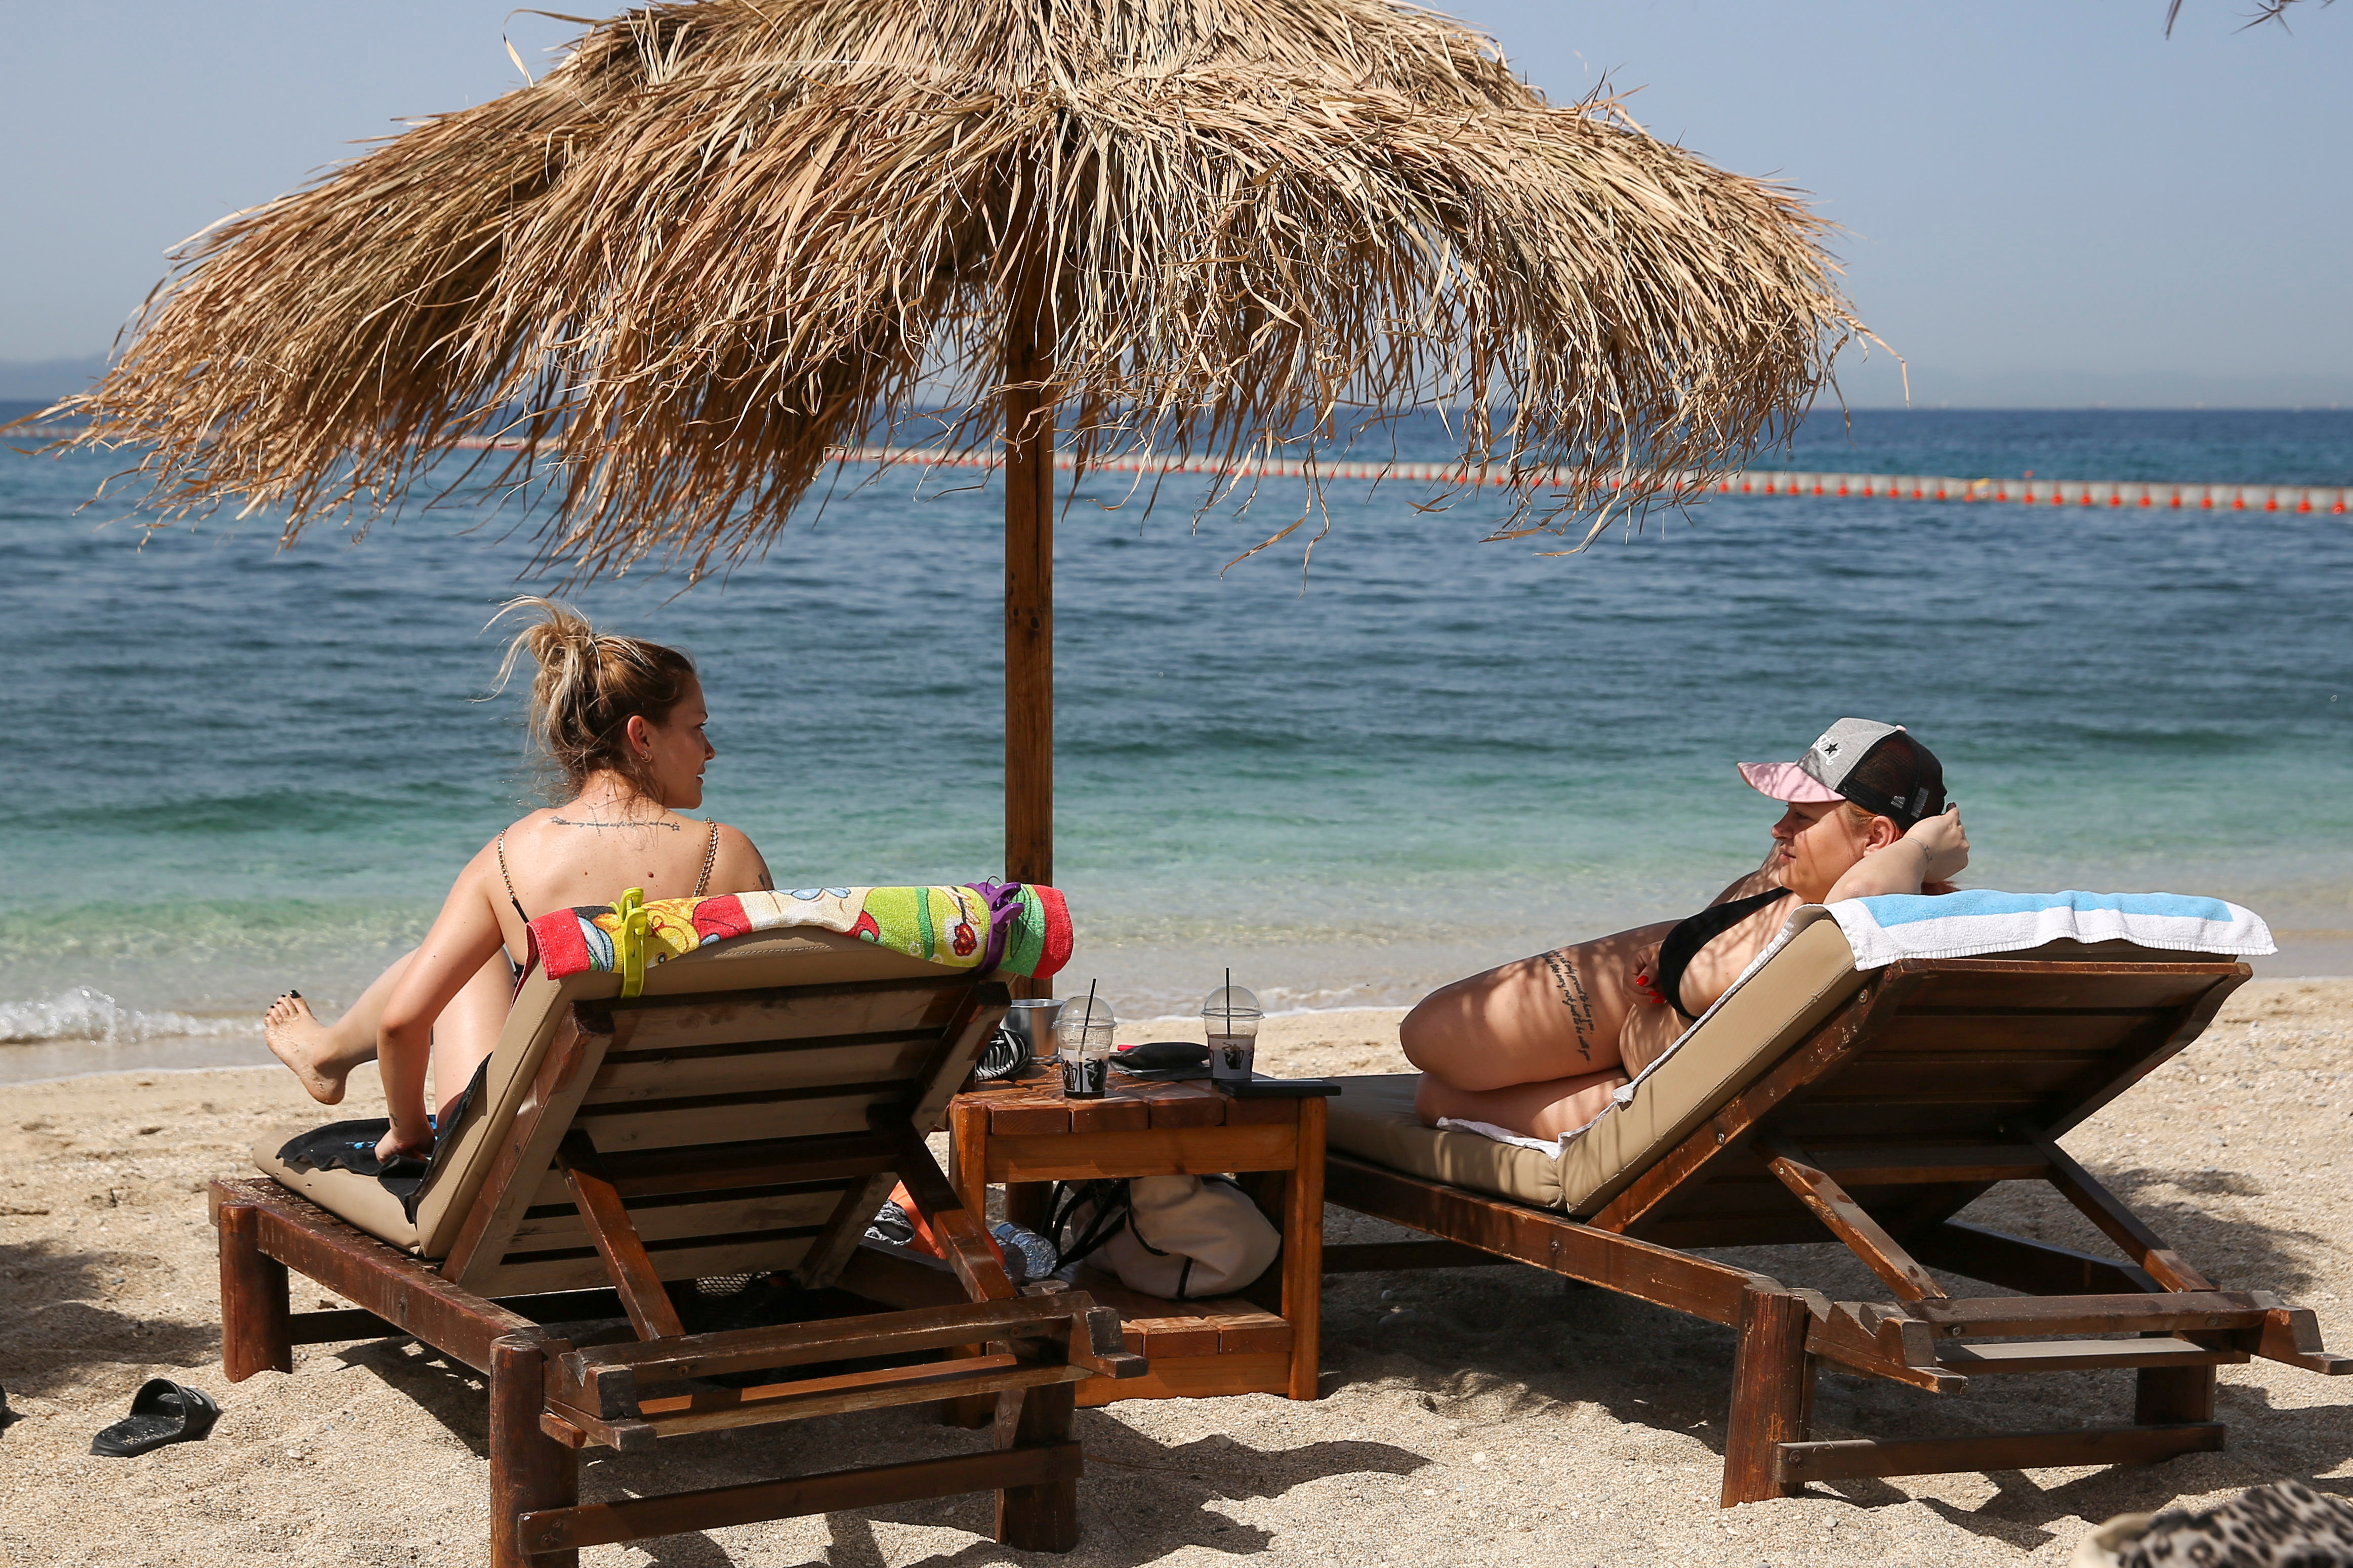 La gent gaudeix del sol durant la reobertura oficial de les platges al públic, després de la flexibilització de les mesures contra la propagació de la malaltia del coronavirus (COVID-19), a Atenes, Grècia, 8 de maig de 2021. REUTERS/Costas Baltas